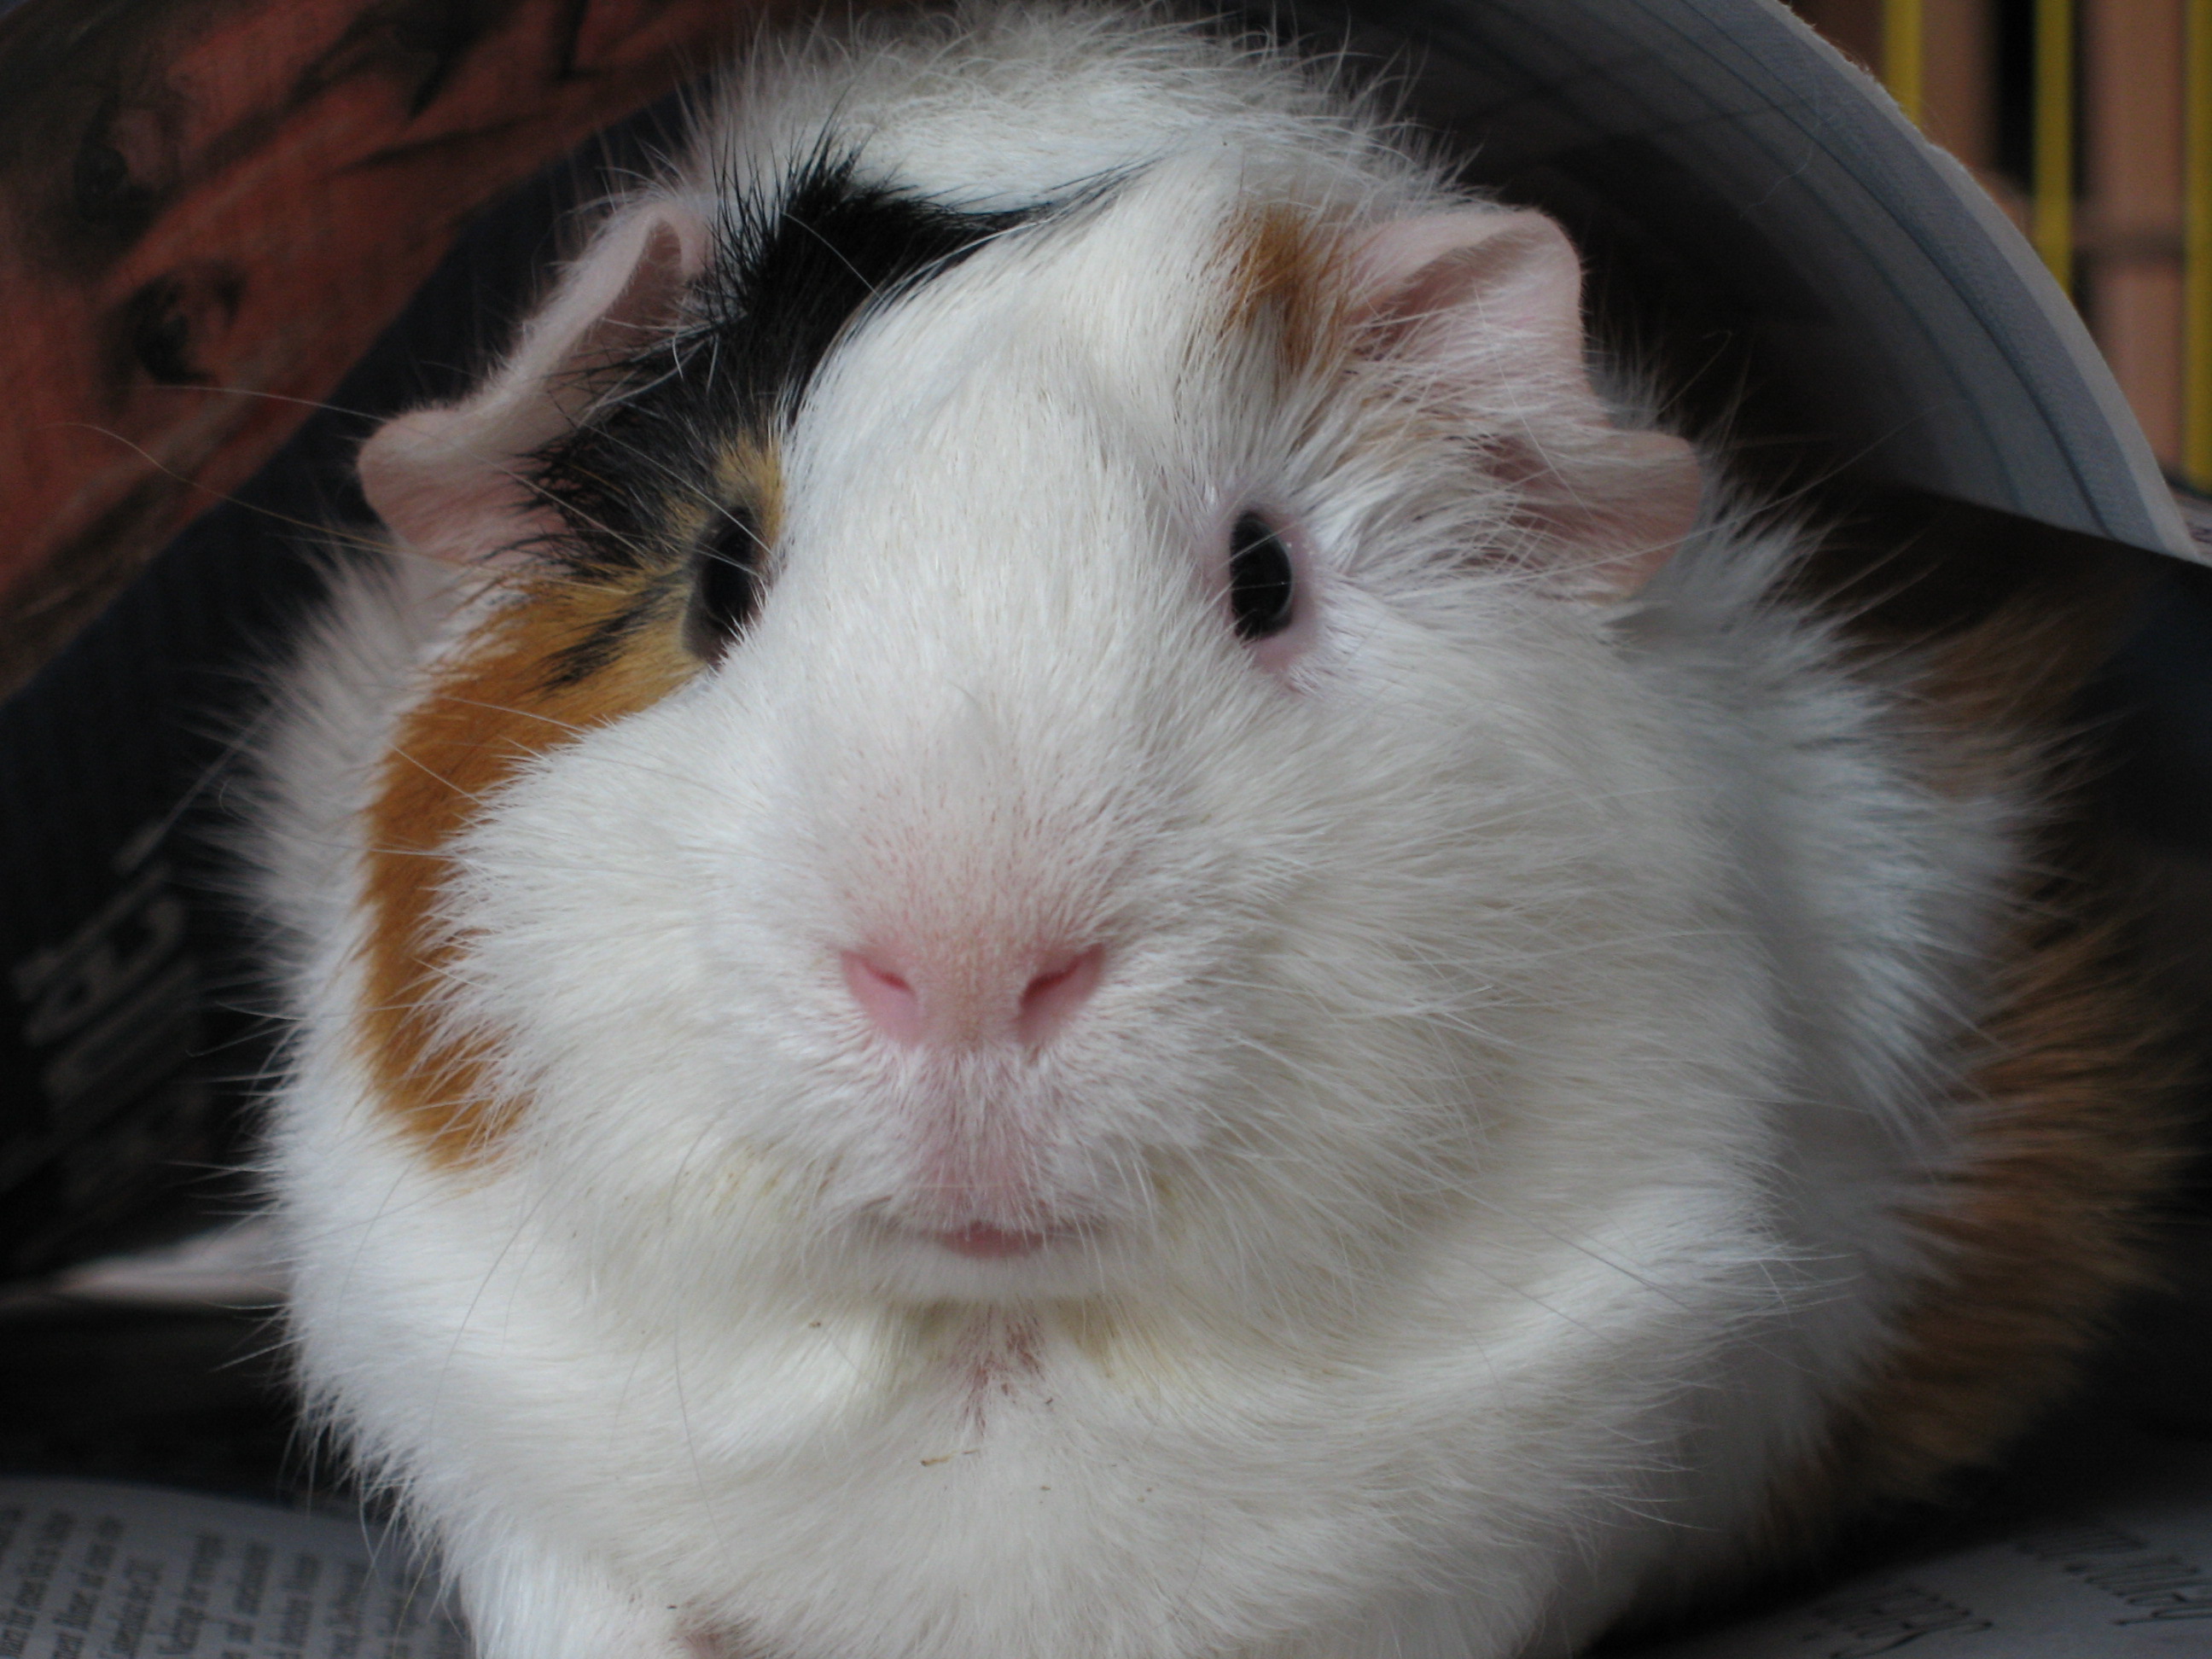 Bob, the guinea pig